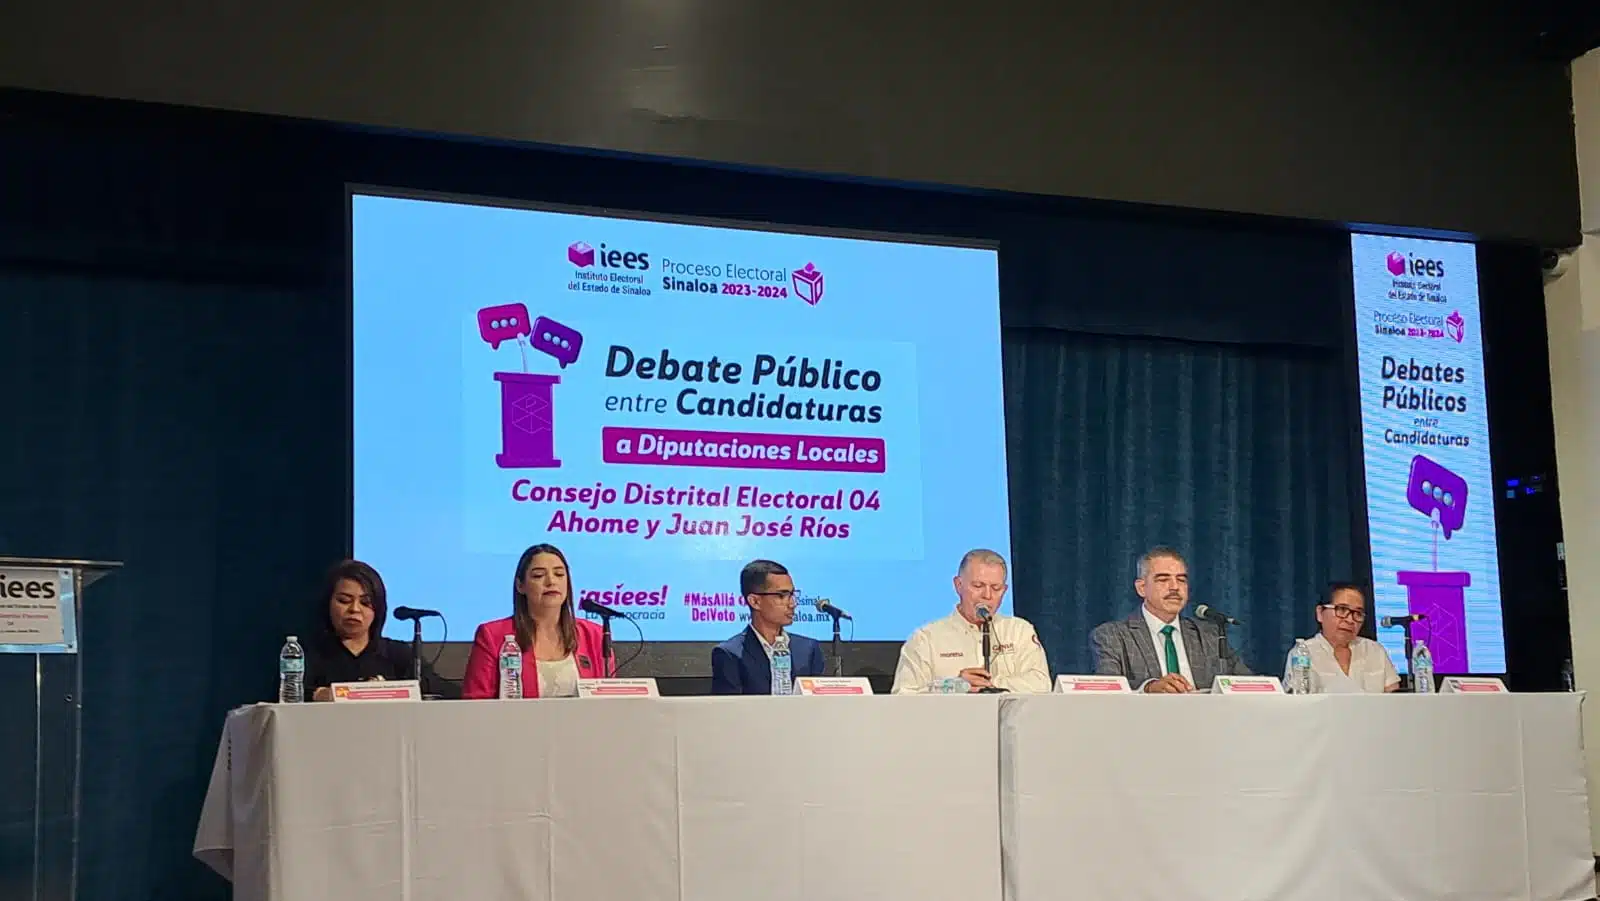 Debate público entre diputados locales por el distrito electoral 04 Ahome y Juan José Ríos